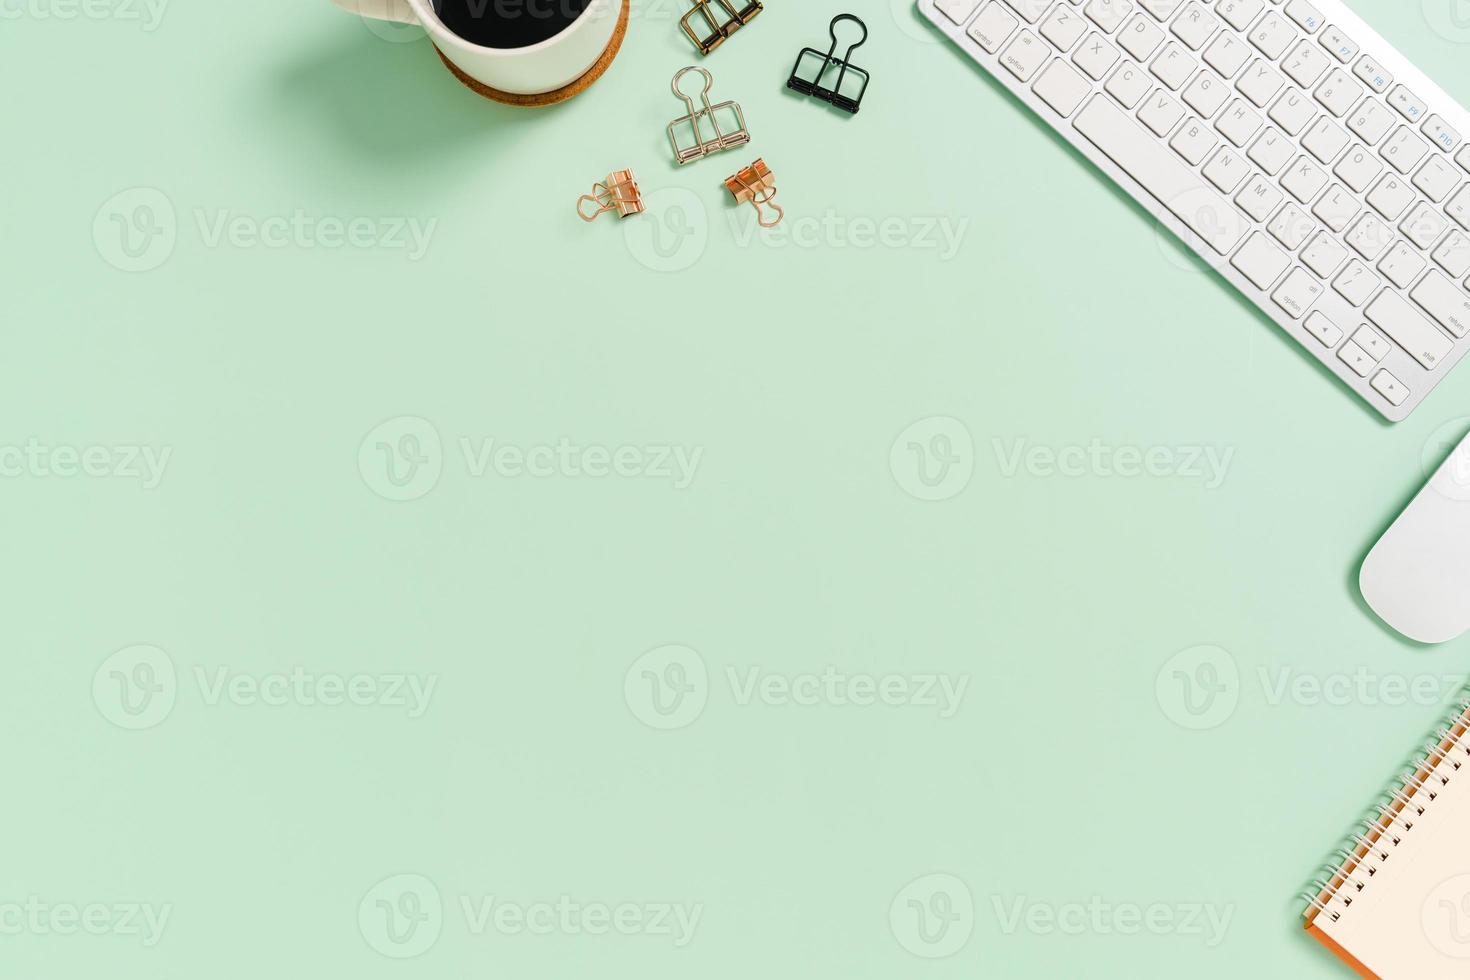 espaço de trabalho mínimo - foto criativa plana da mesa do espaço de trabalho. mesa de escritório de vista superior com teclado e mouse sobre fundo de cor verde pastel. vista superior com espaço de cópia, fotografia plana leiga.